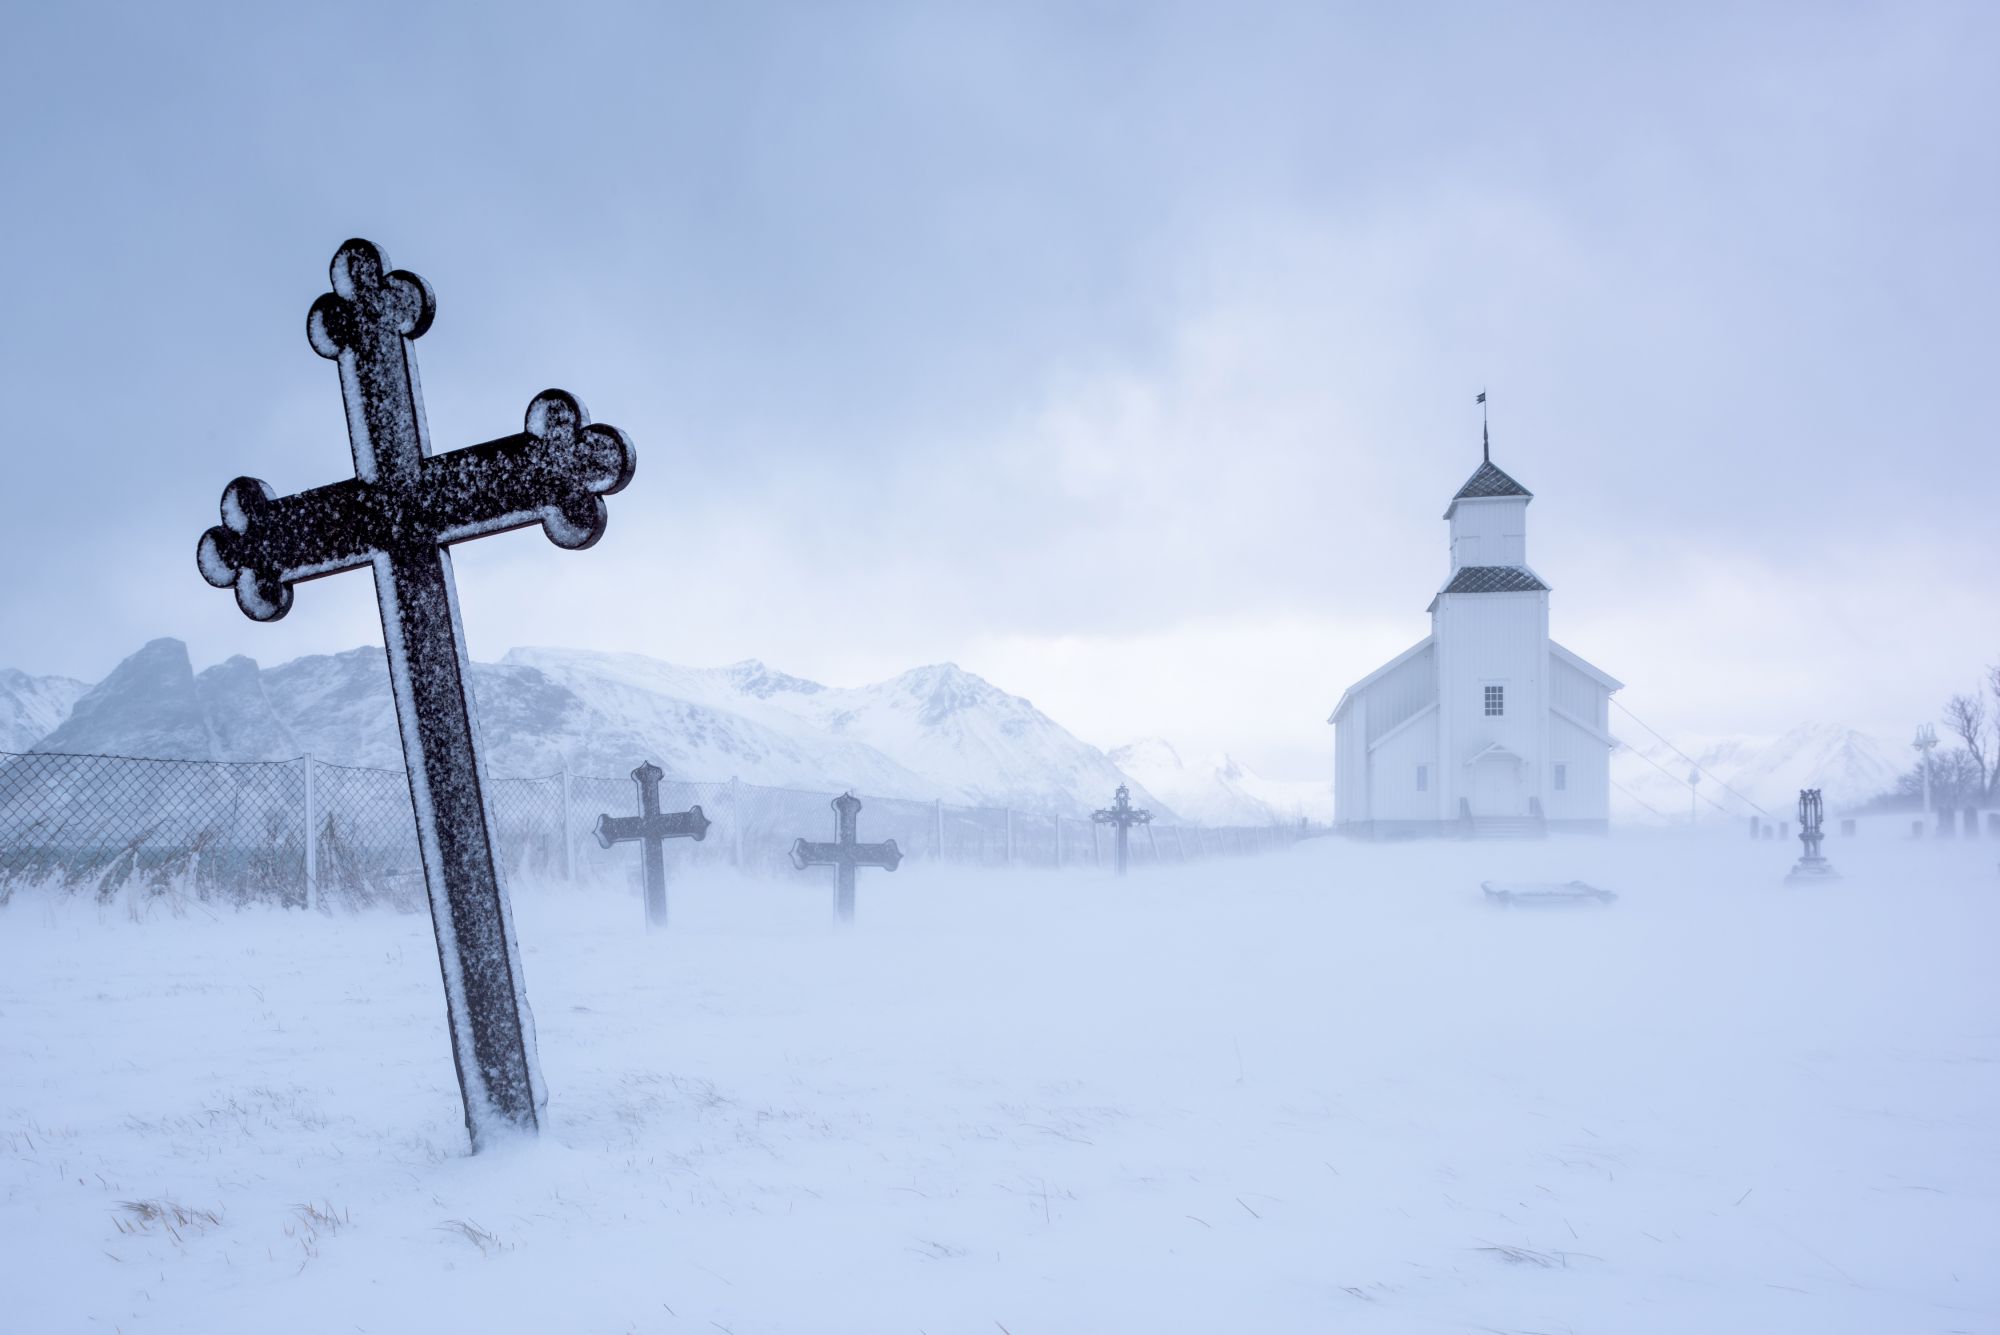 Kerkje in sneeuwstorm